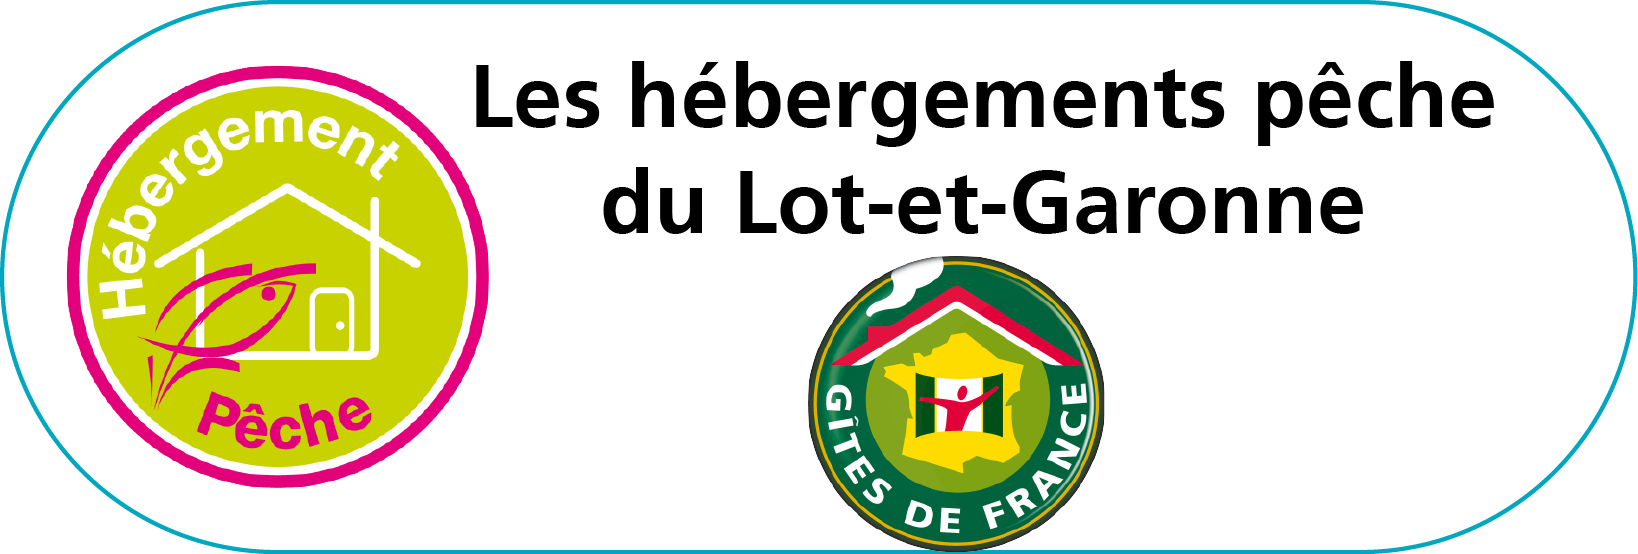 Lien hébergements pêche Lot-et-Garonne Gite de France